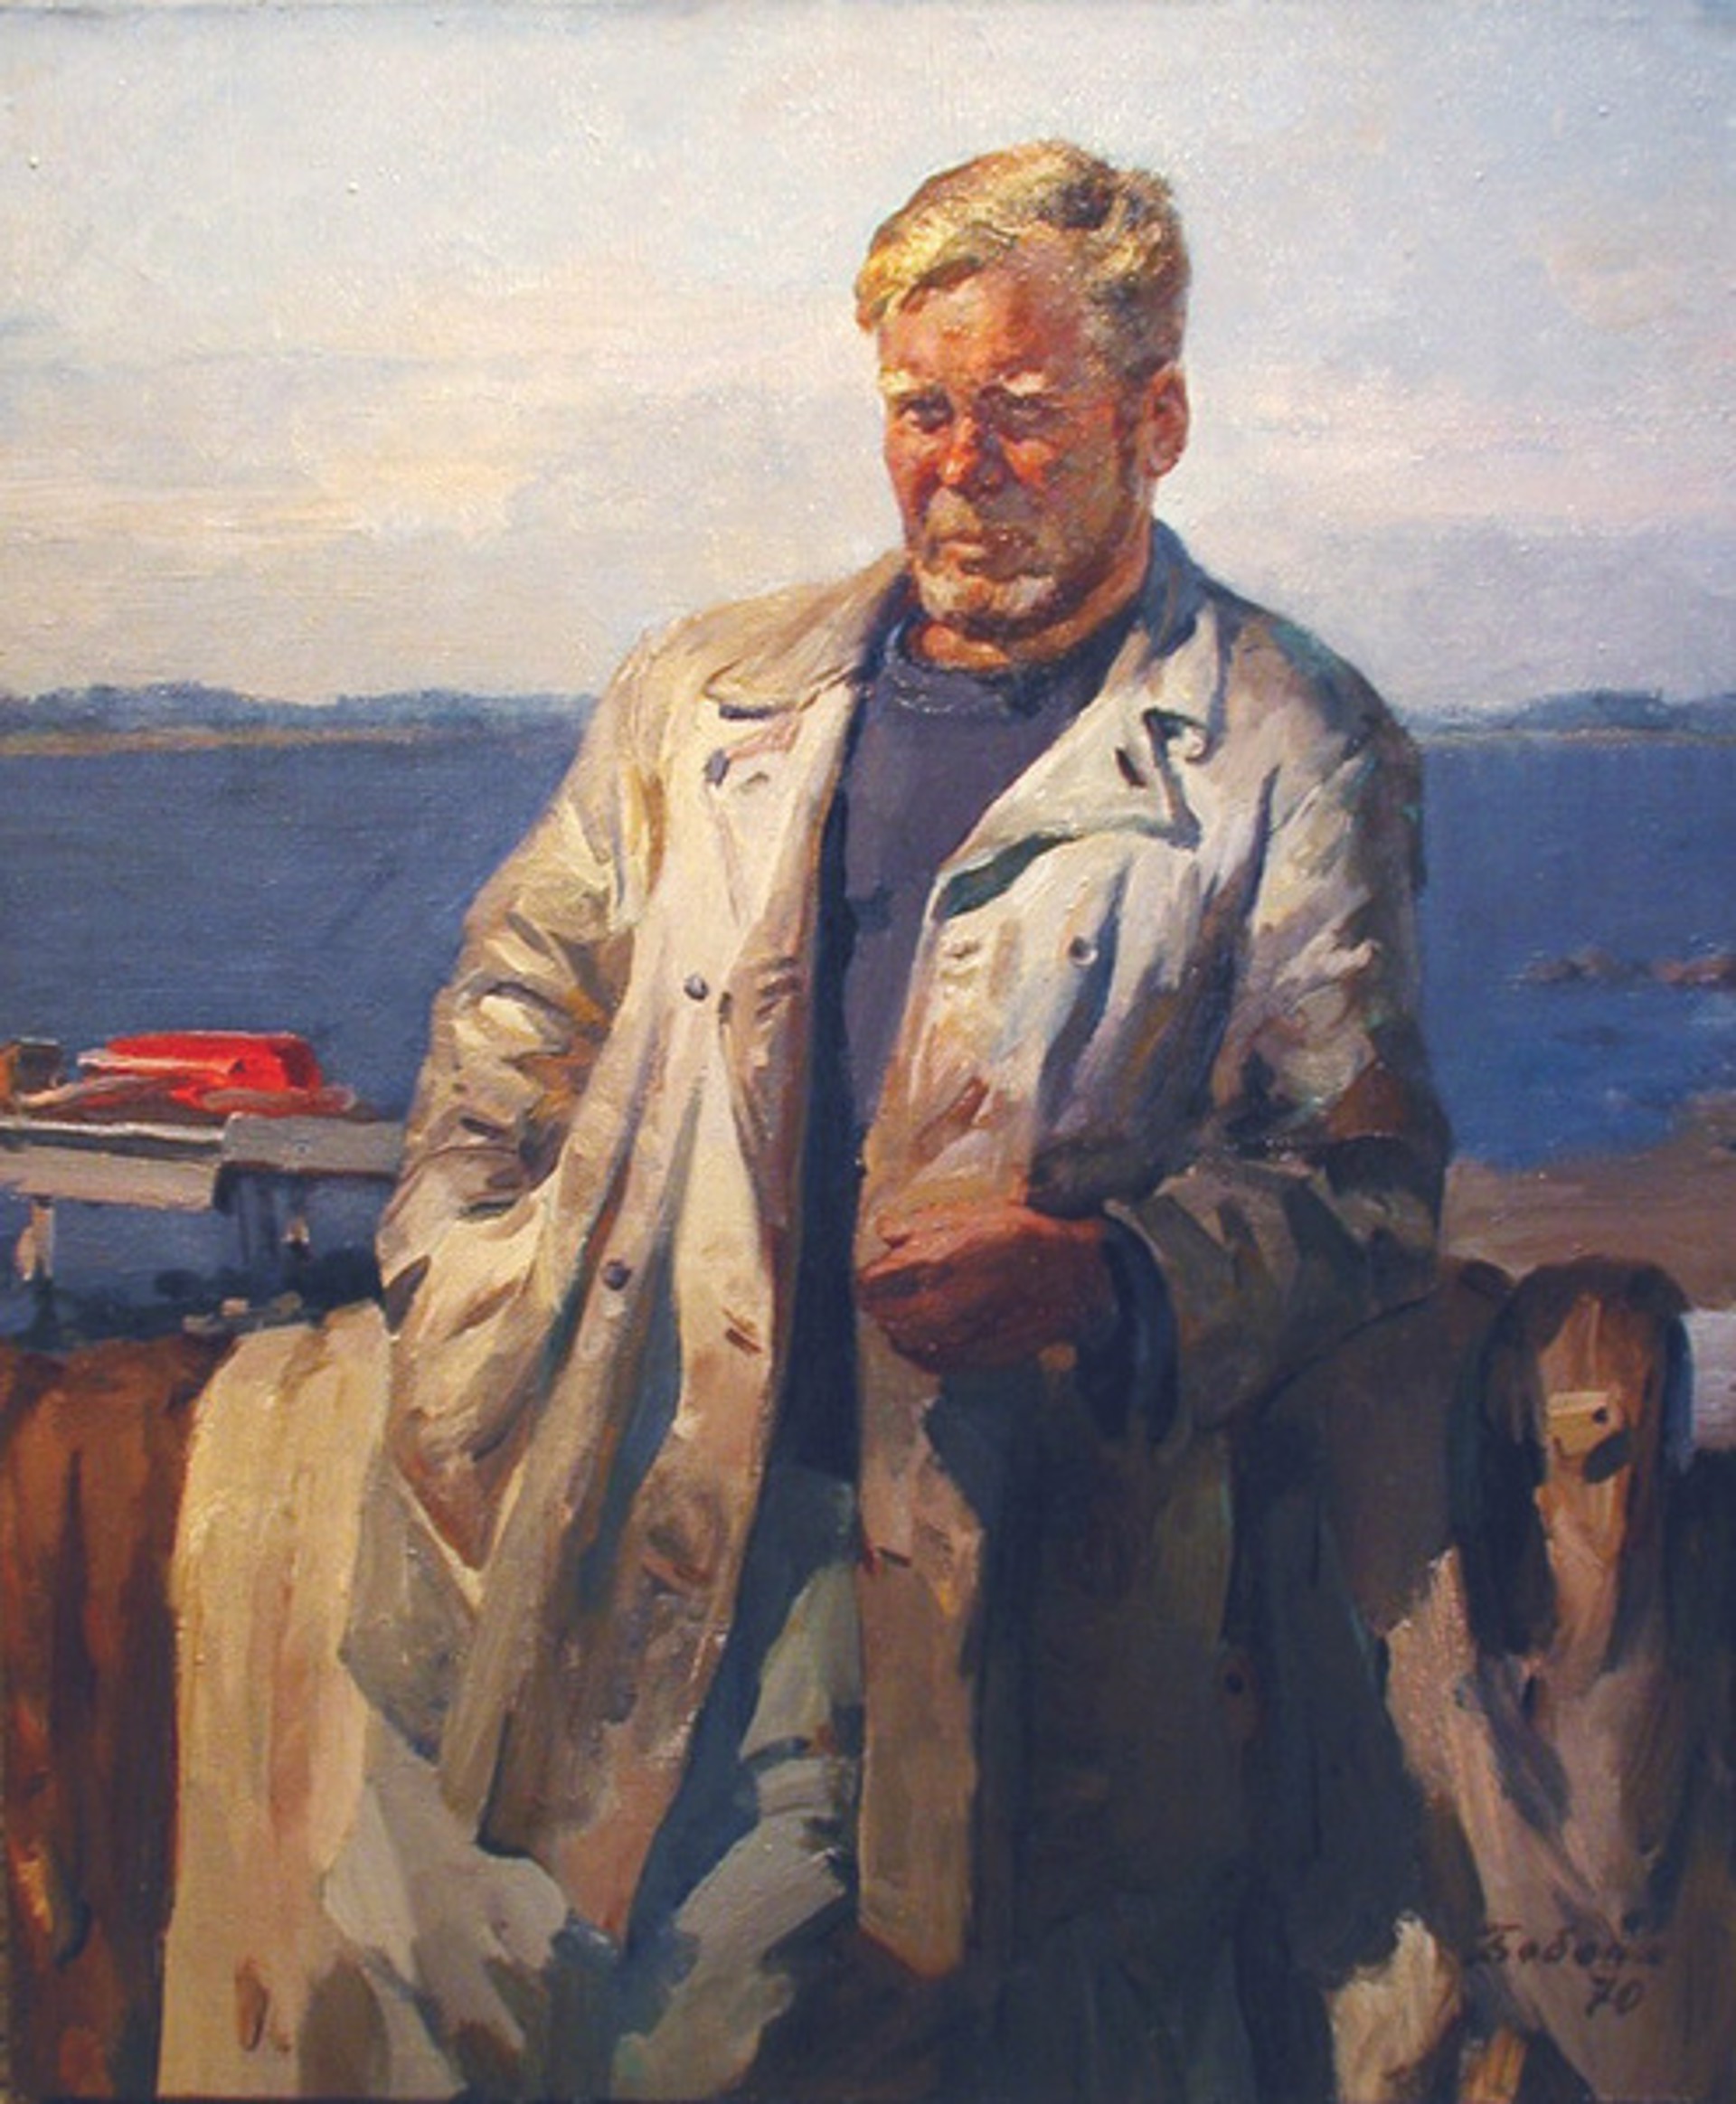 Captain by Nikolai L. Babasyuk